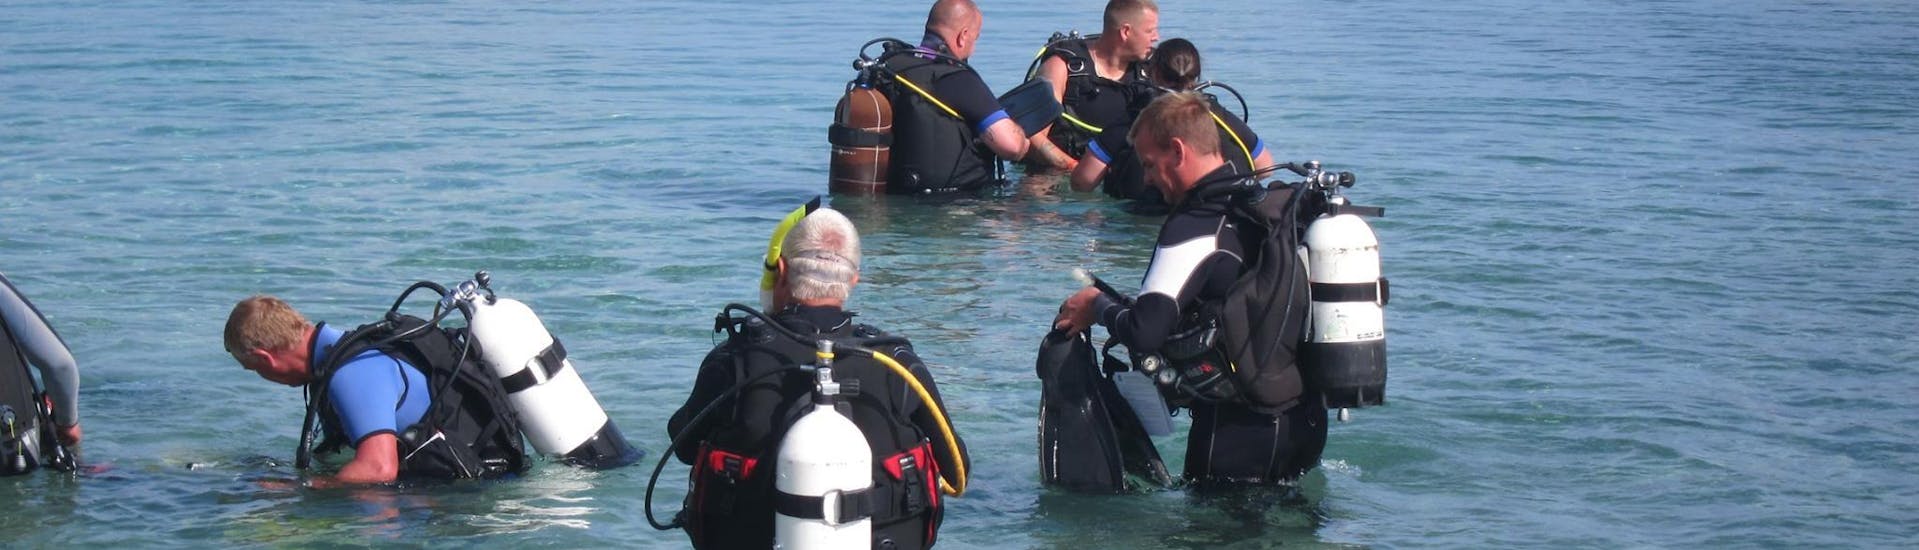 Corso di immersione (PADI) a Coral Bay (Peyia) per principianti.